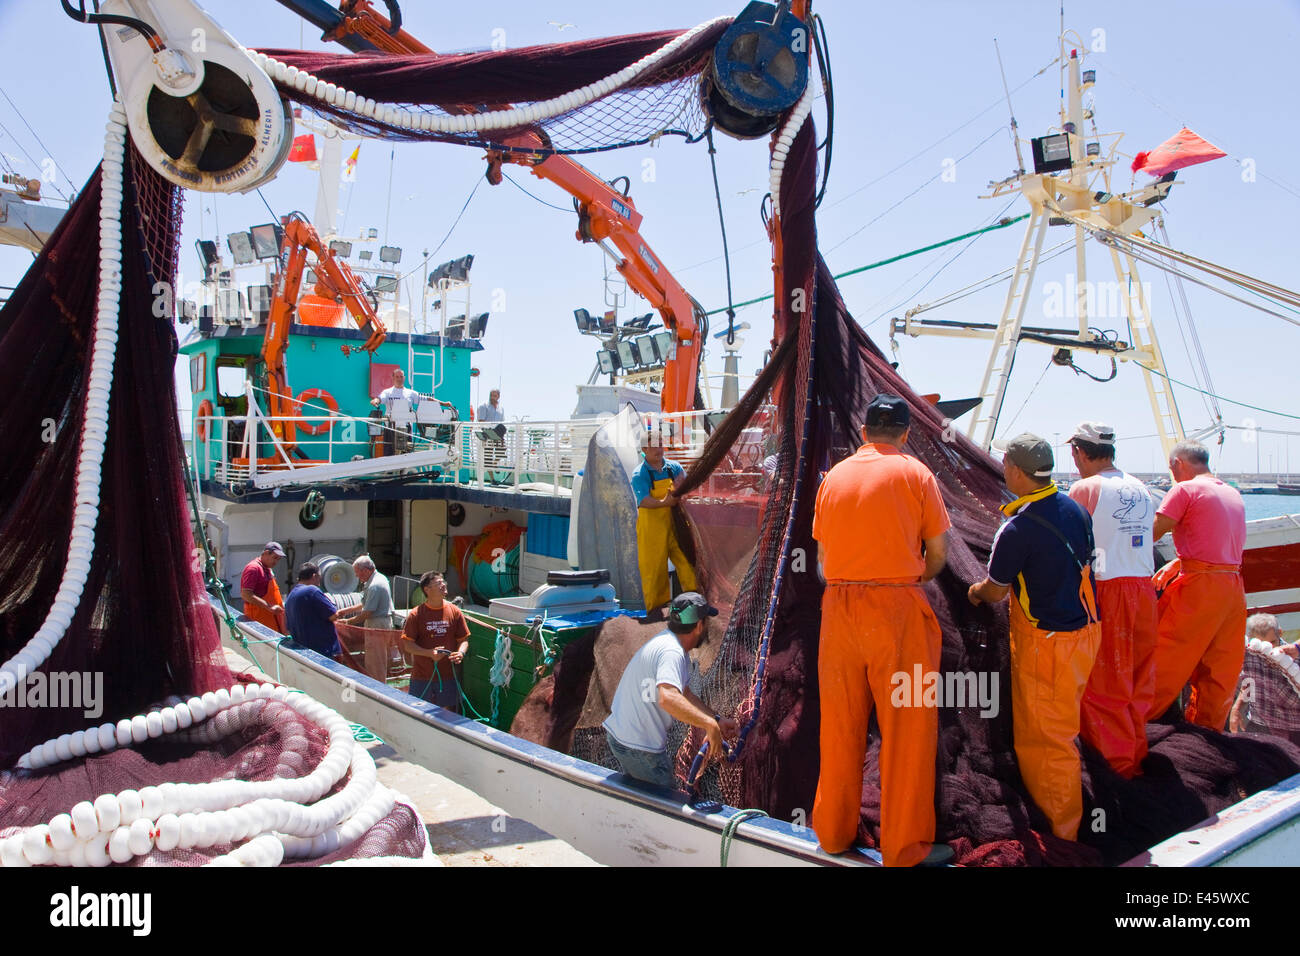 Déchargement de captures des pêcheurs bateau de pêche commerciale, Puerto de Barbate, Cadix, Andalousie, Espagne, juillet 2008 Banque D'Images